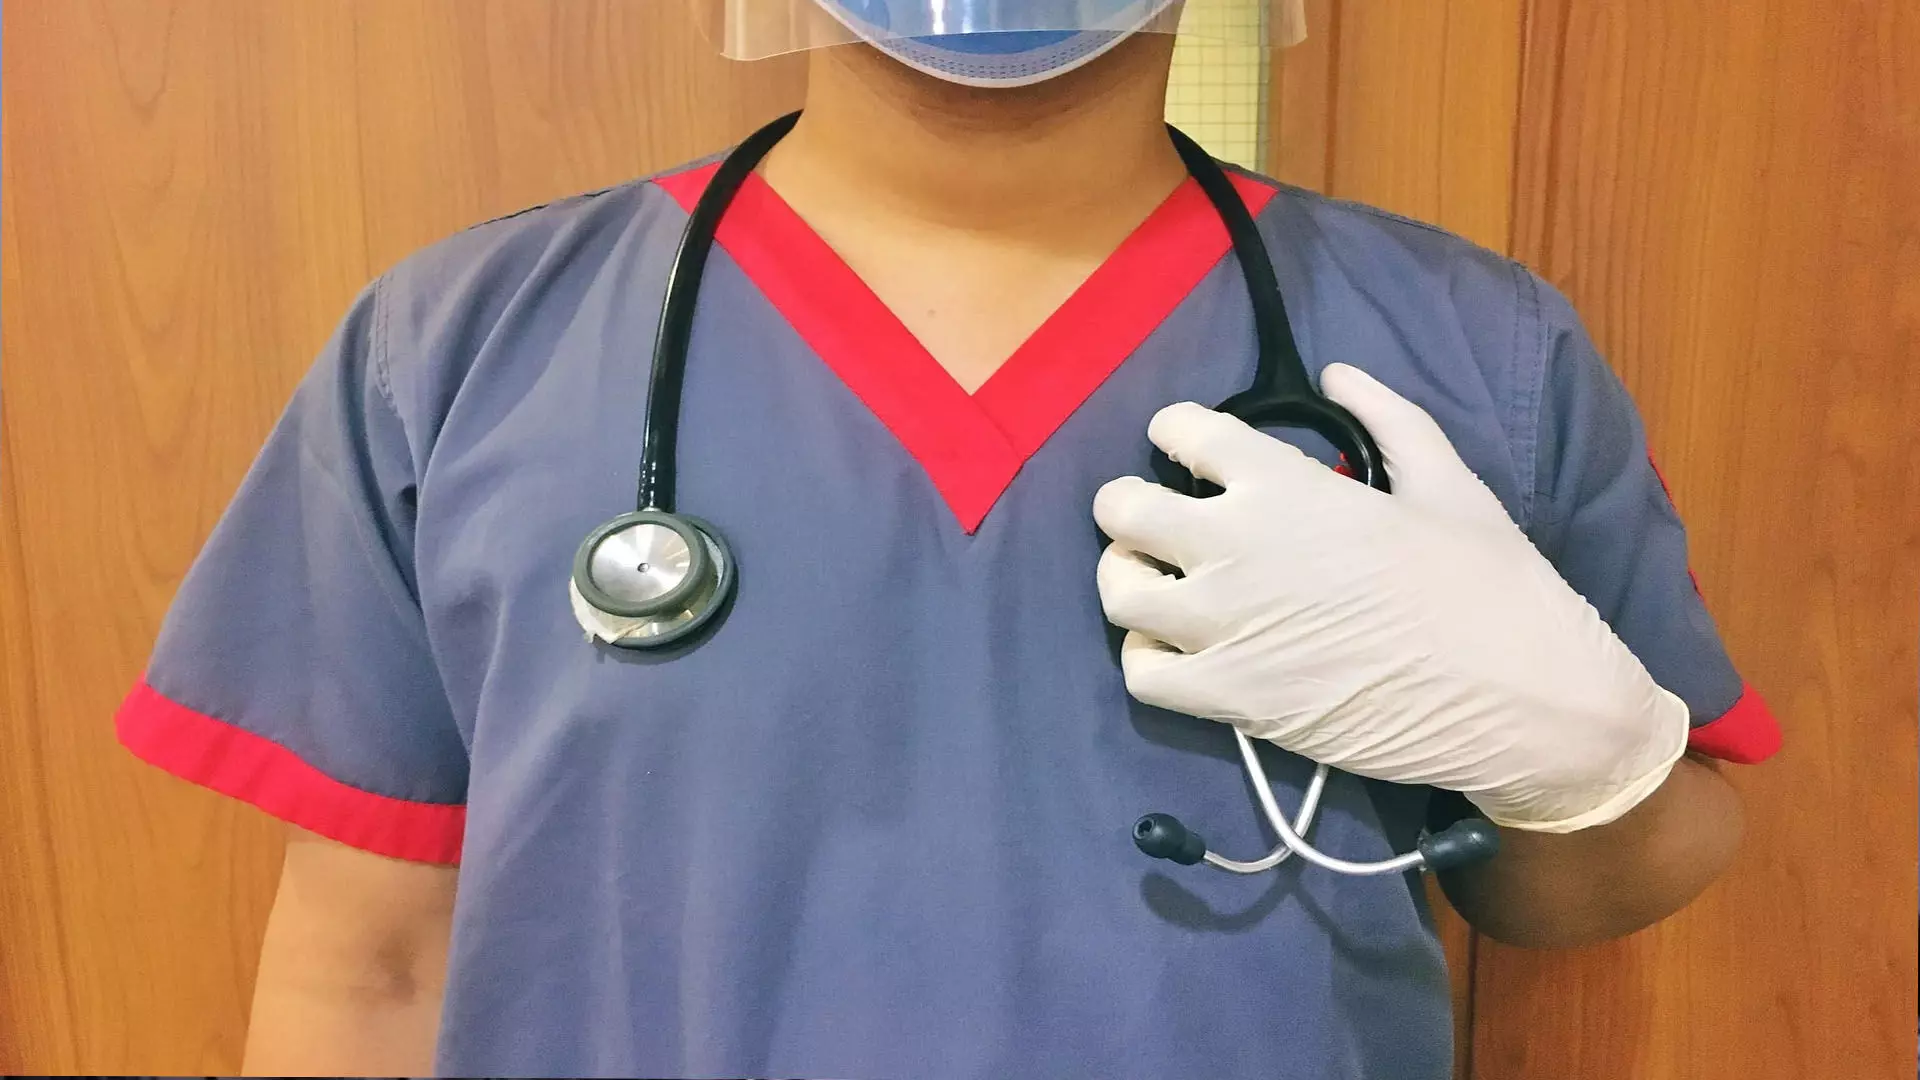 देरी के विरोध के बाद आखिरकार केरल सरकार ने नर्स की नियुक्ति की अनुमति दे दी